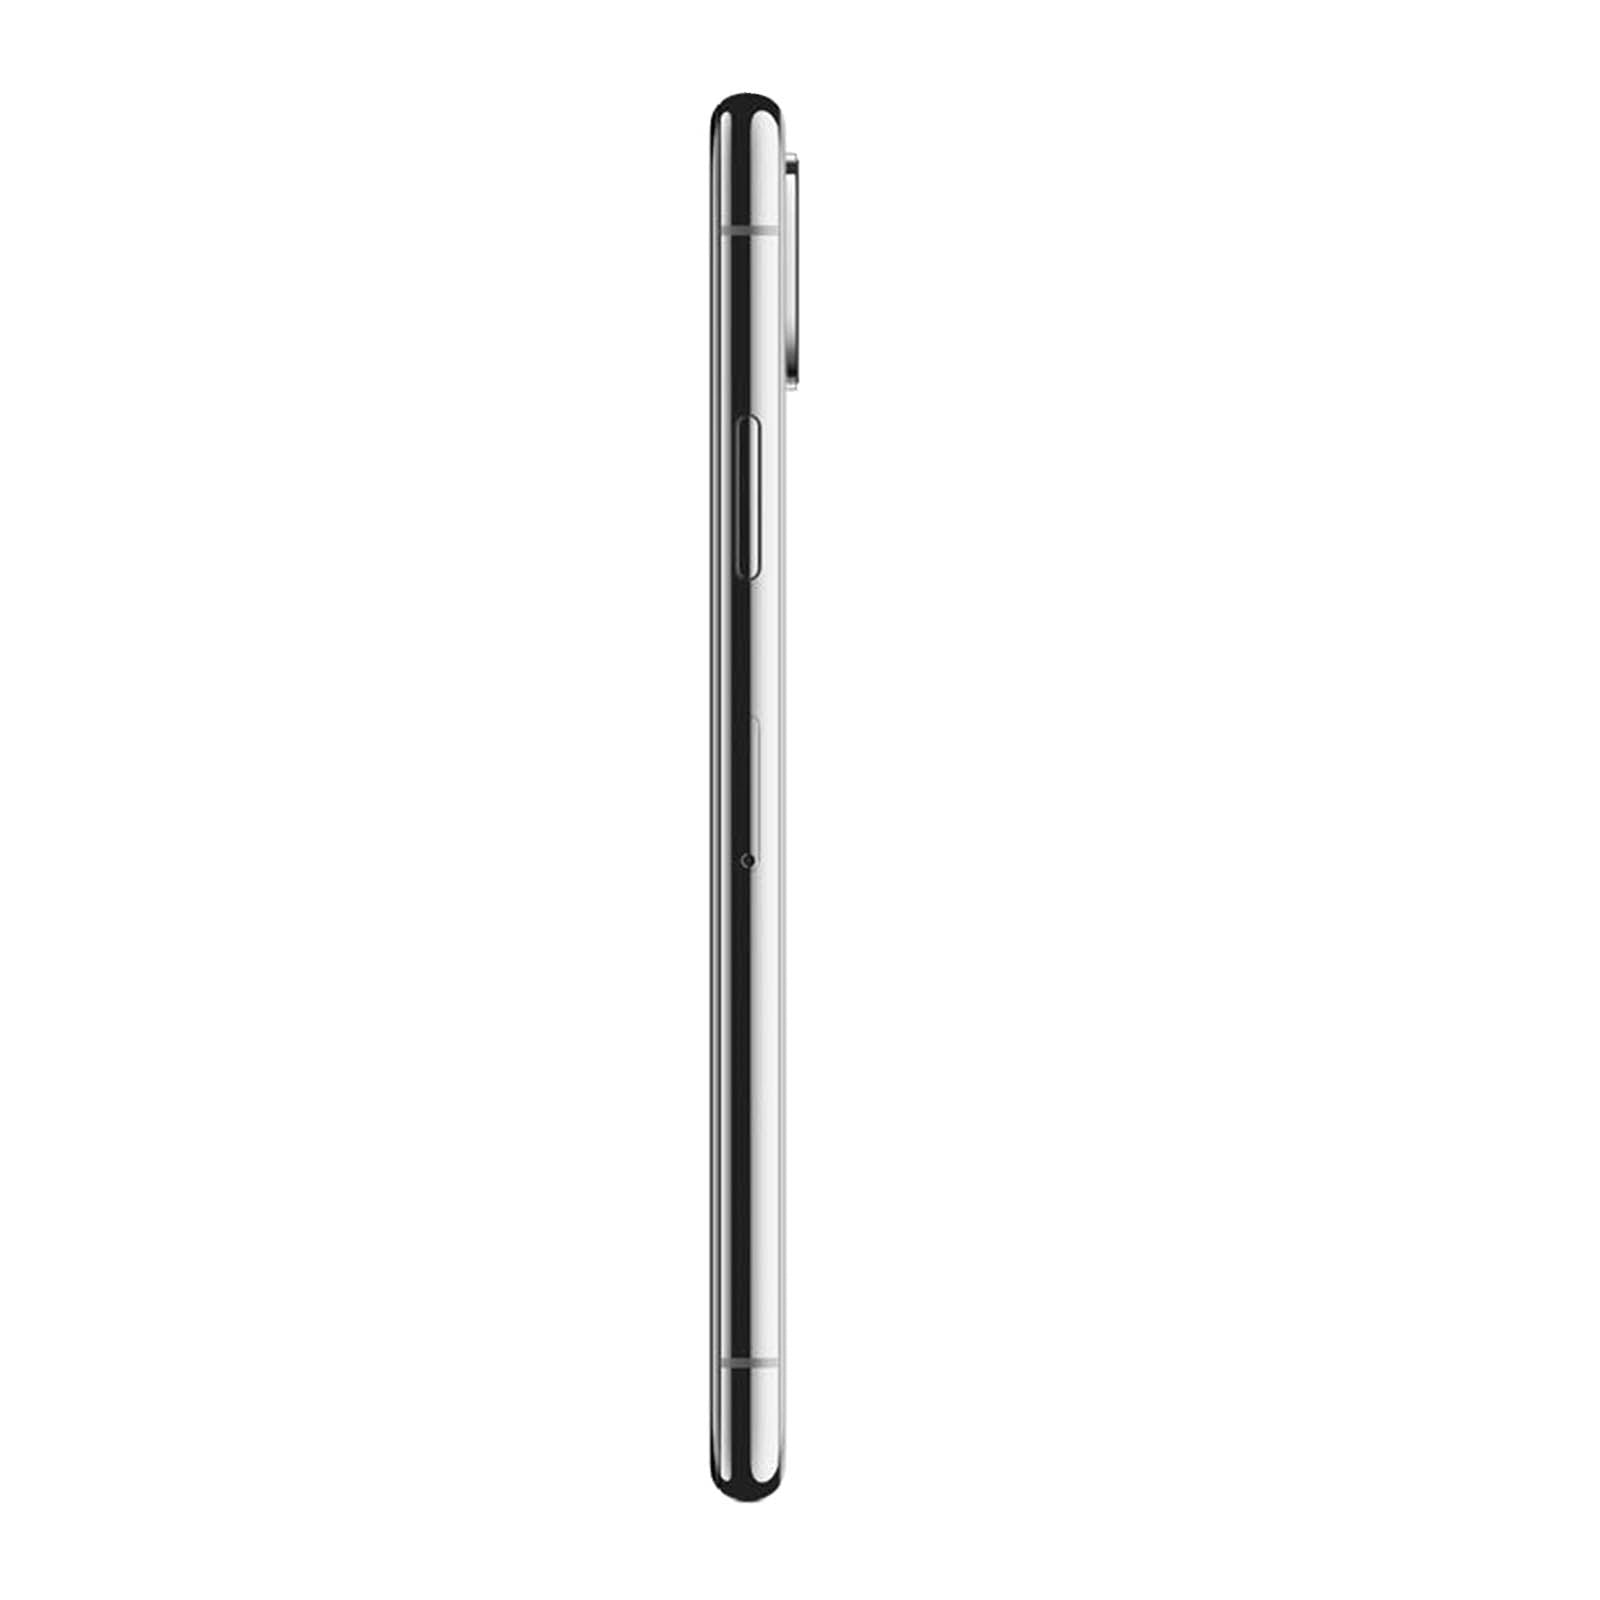 Apple iPhone XS Max 64GB Space Grey Unlocked Fair – Loop Mobile - US